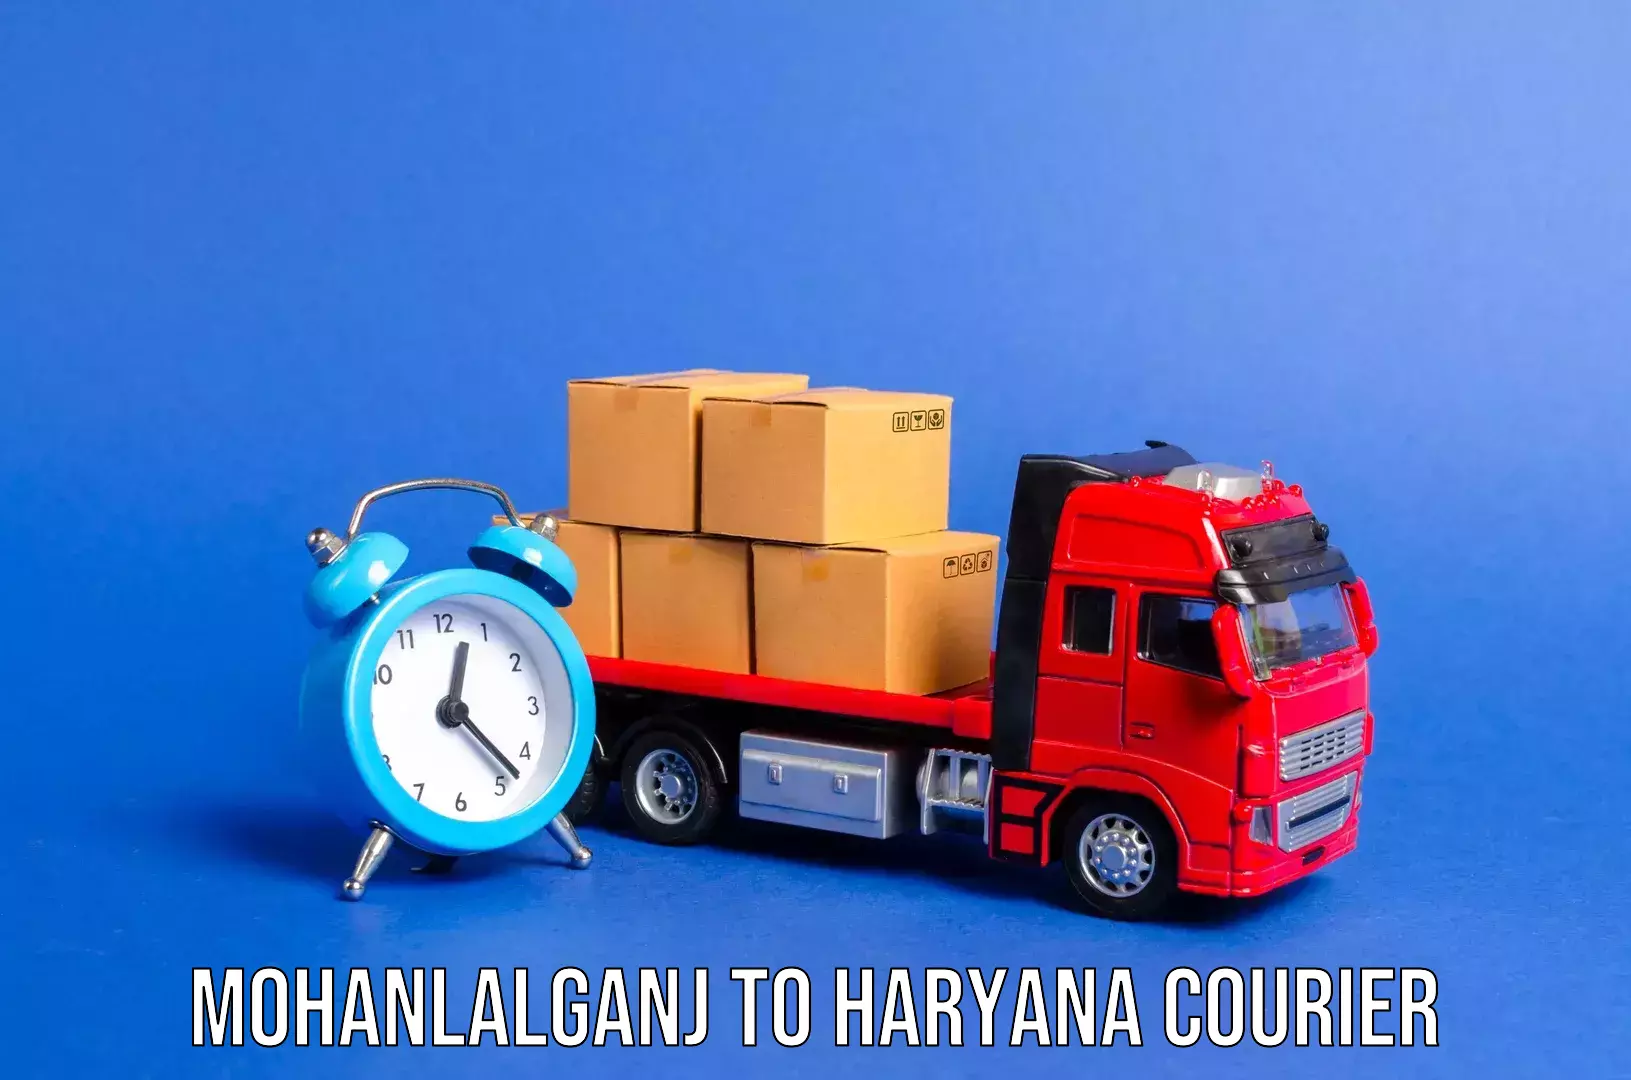 Luggage shipment tracking Mohanlalganj to Gurgaon